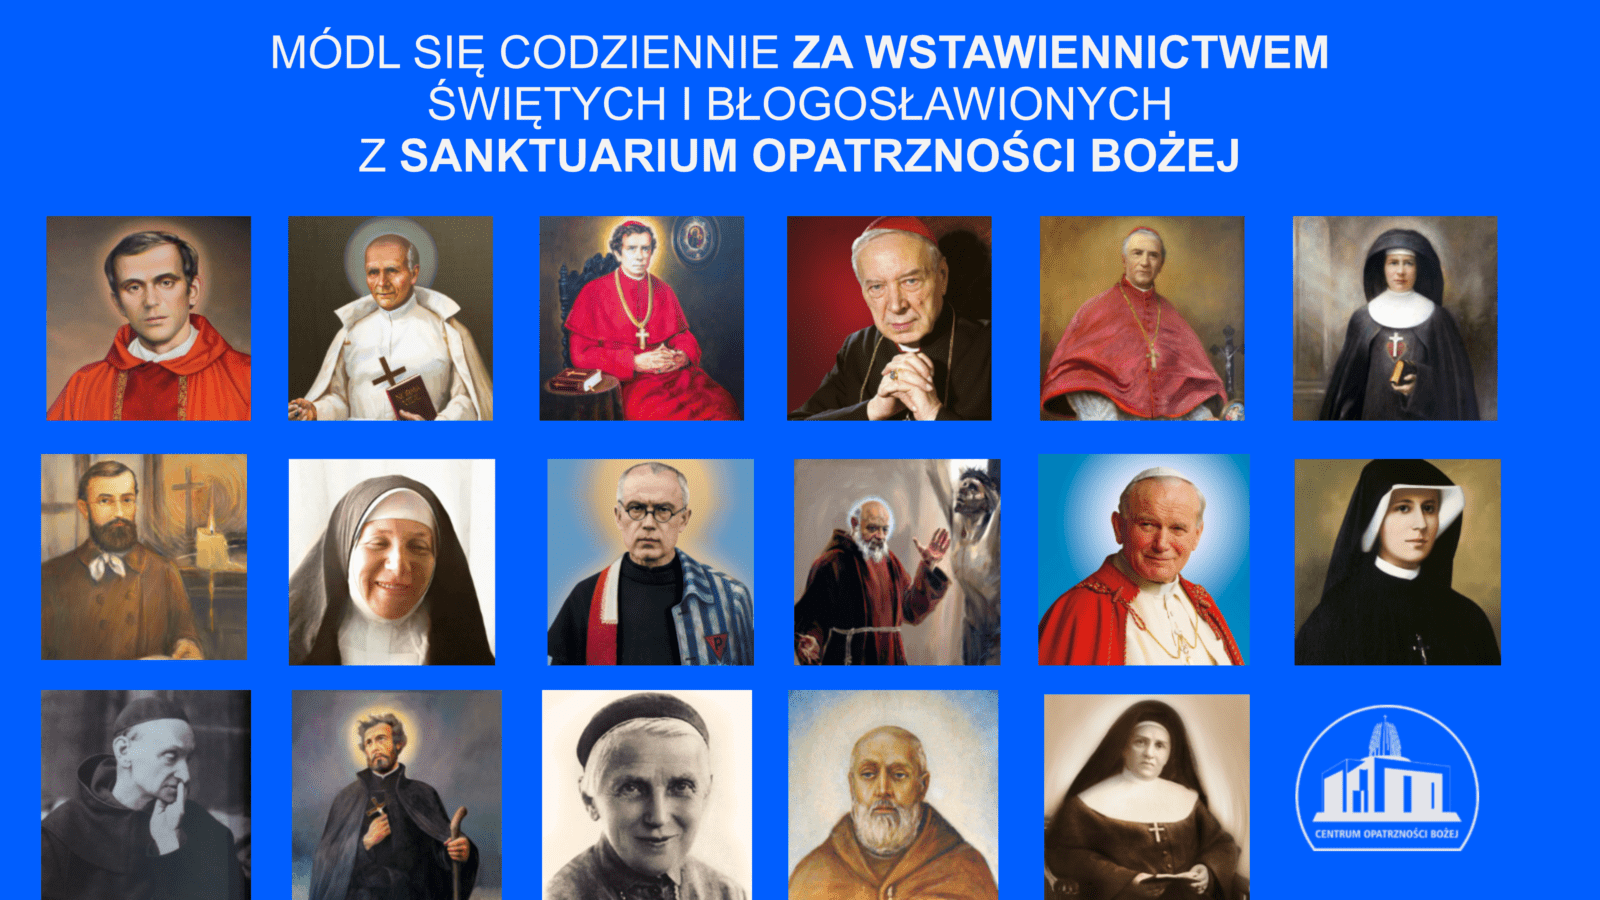 17 świętych i błogosławionych z Sanktuarium Opatrzności Bożej